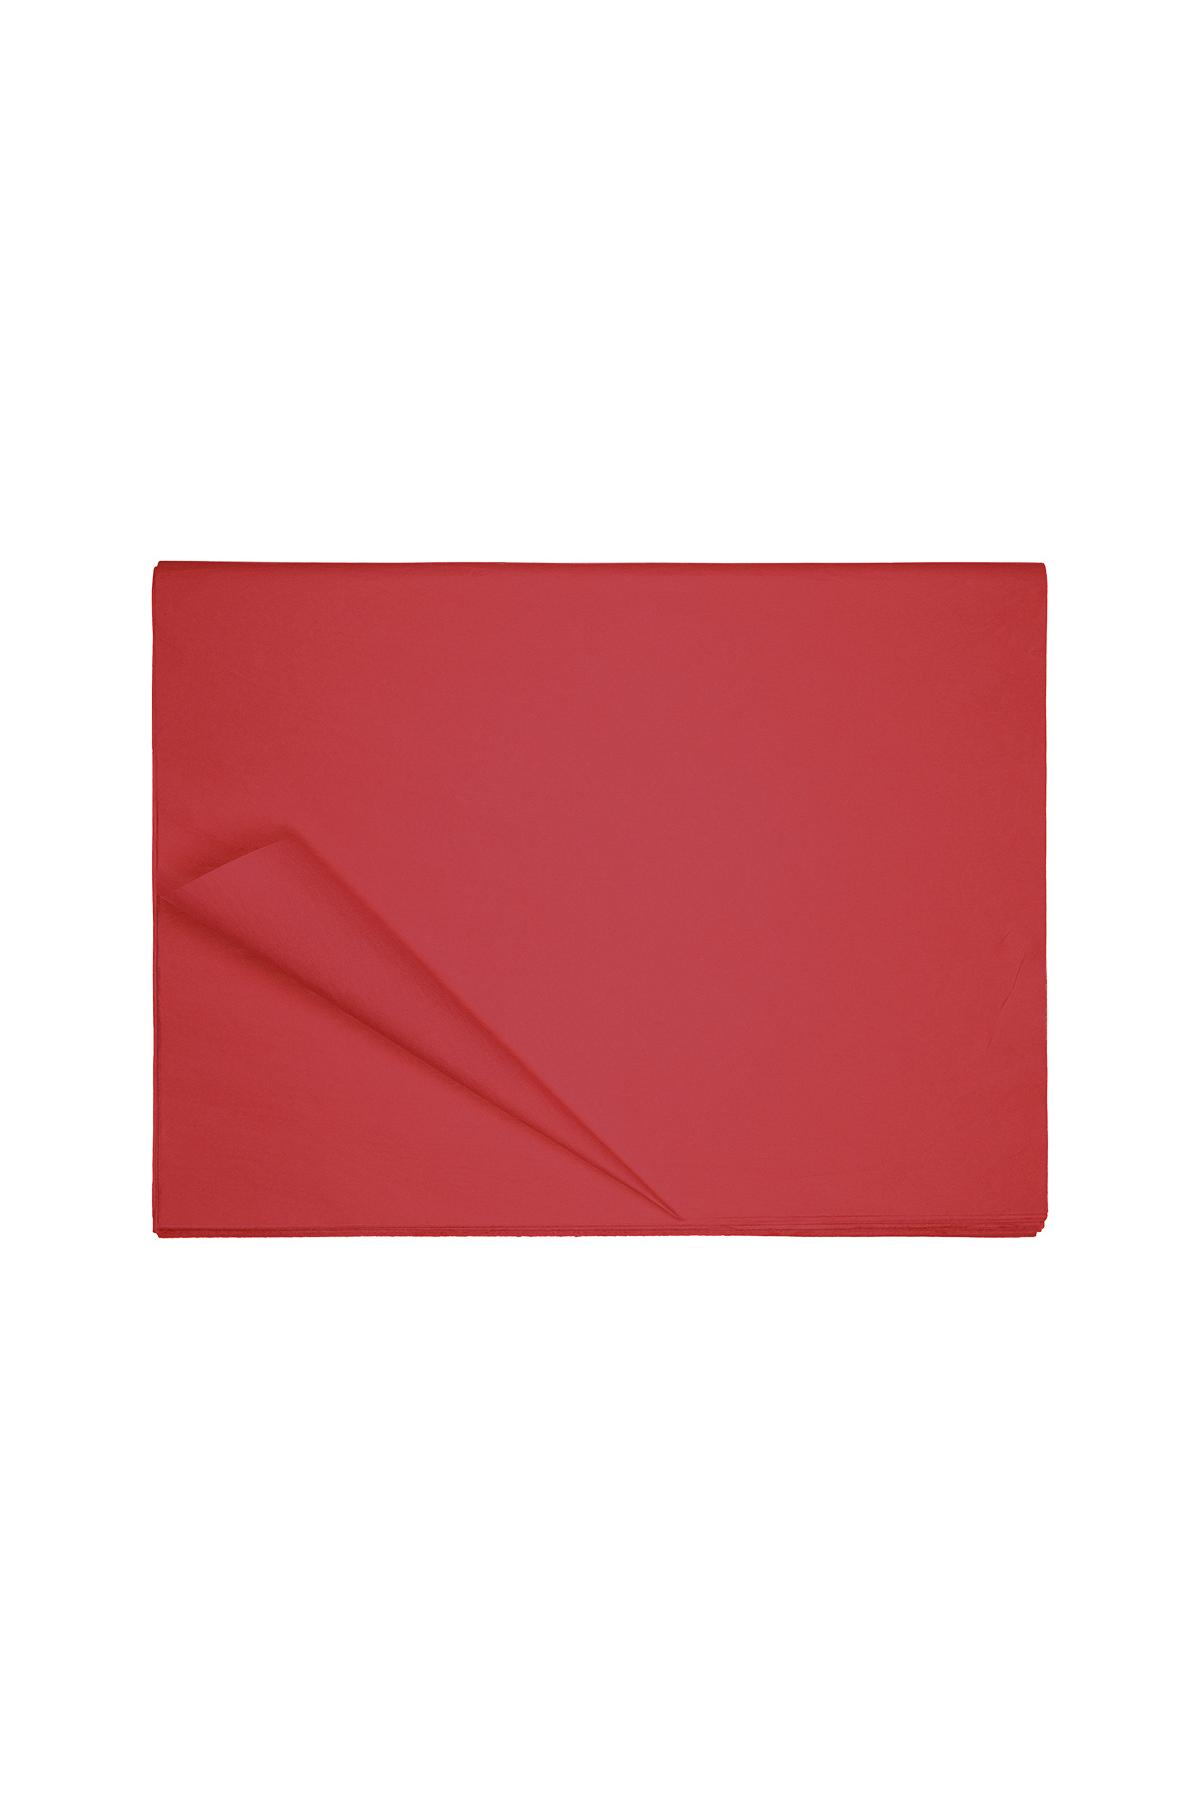 Löschpapier - rotes Papier h5 